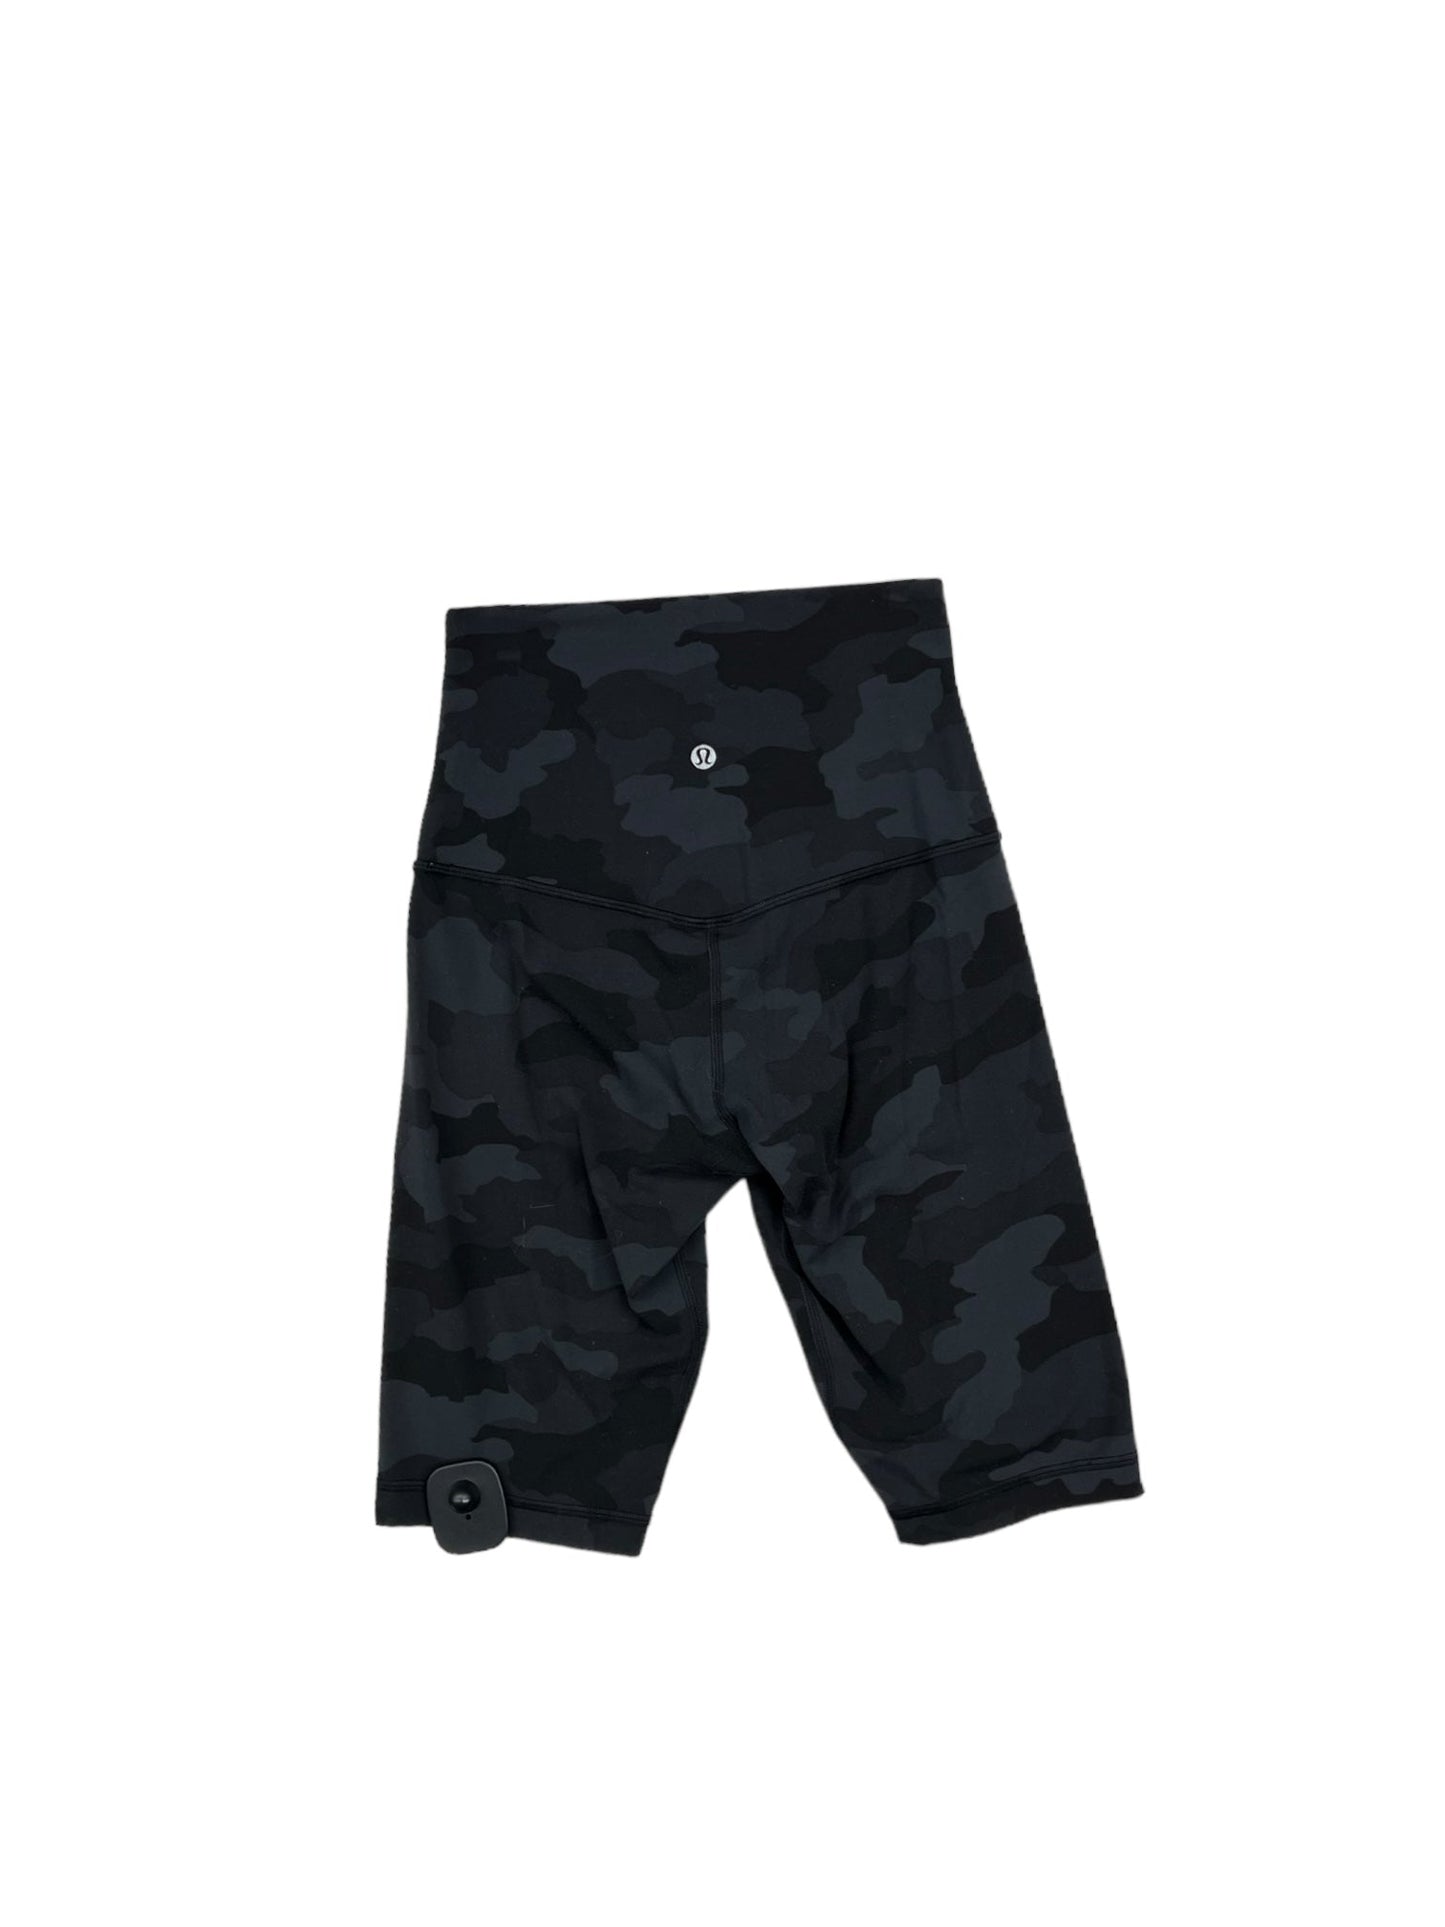 Camouflage Print Athletic Shorts Lululemon, Size Xs